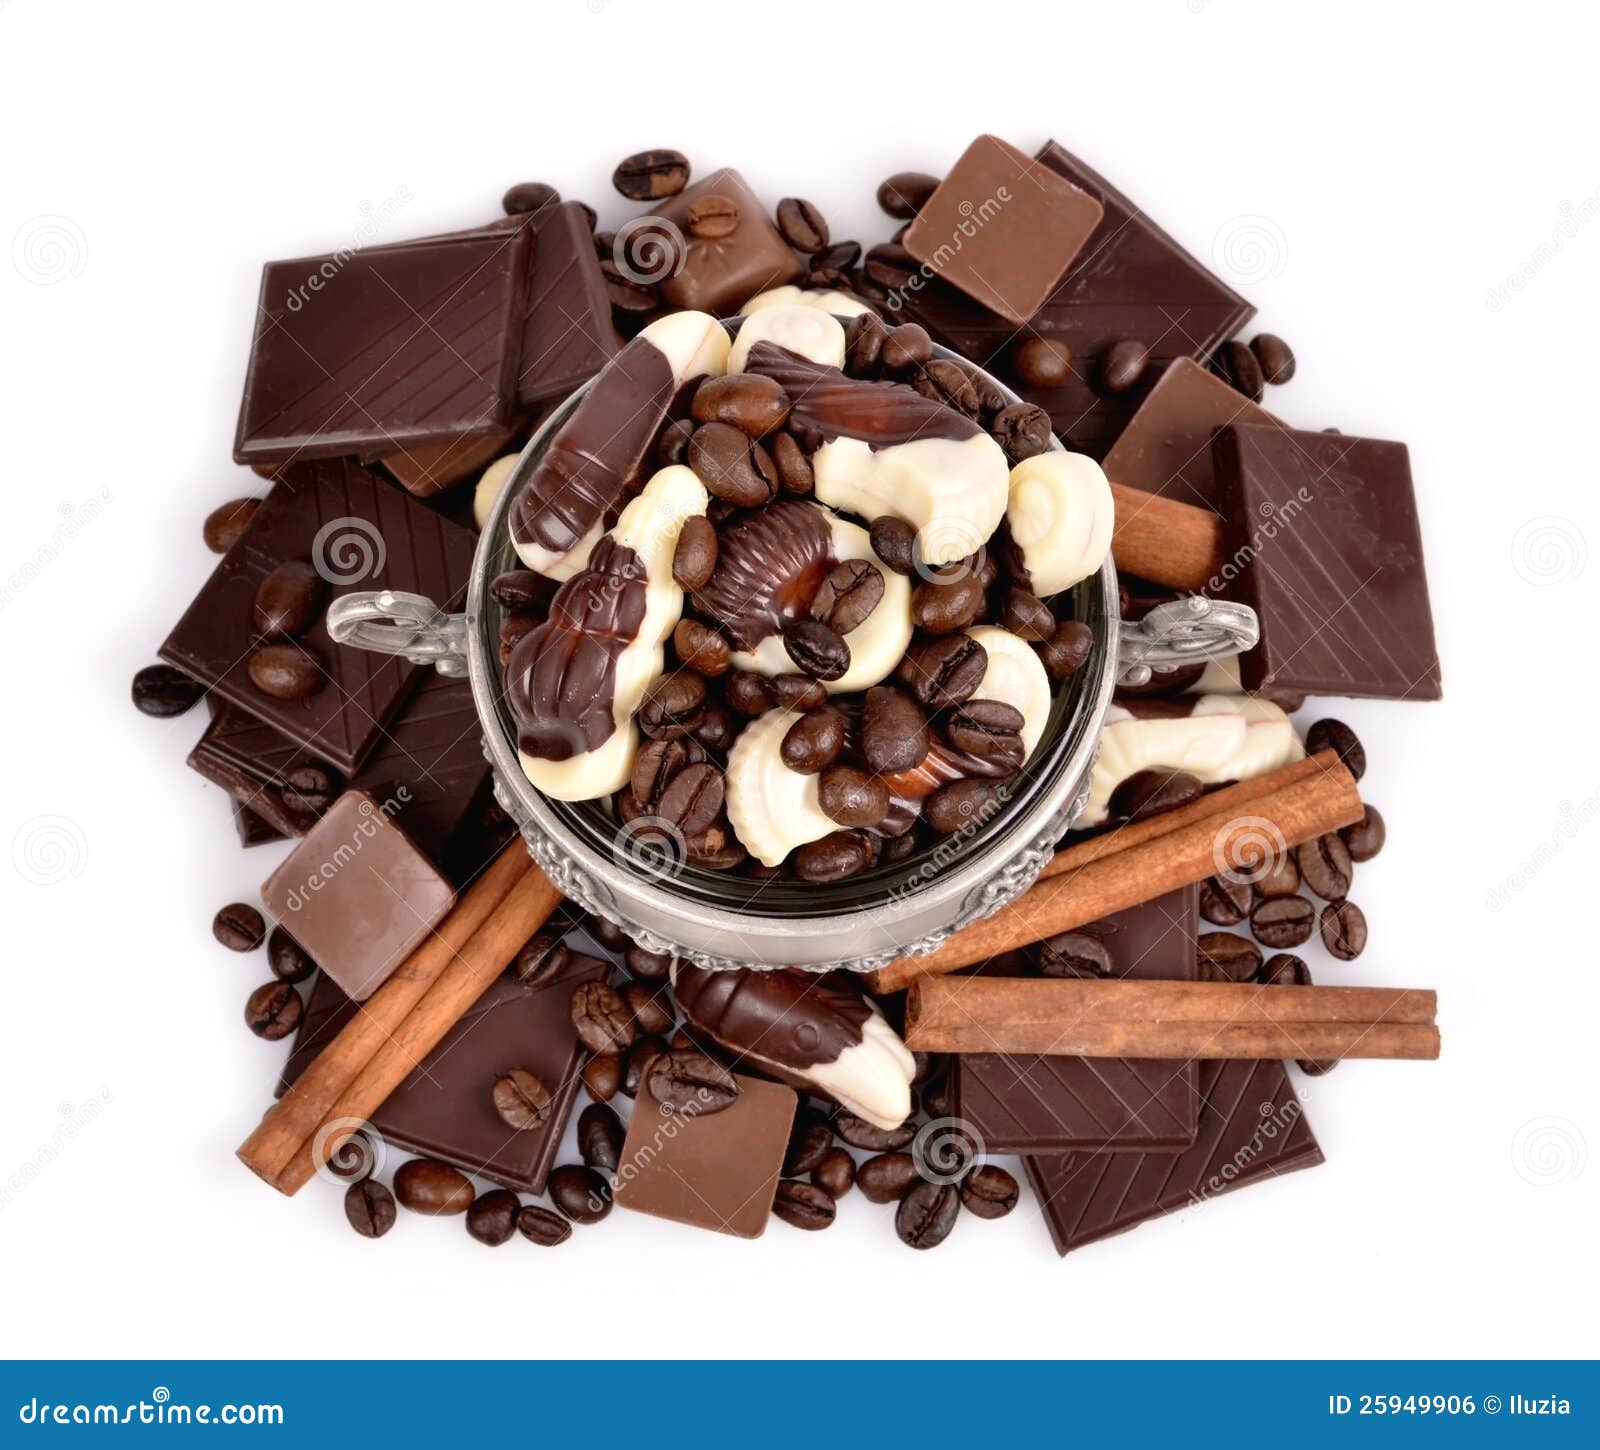 Asortowani czekoladowi cukierki, kawowe fasole, czekolada, w metalu zbiornika close-up na biały tle